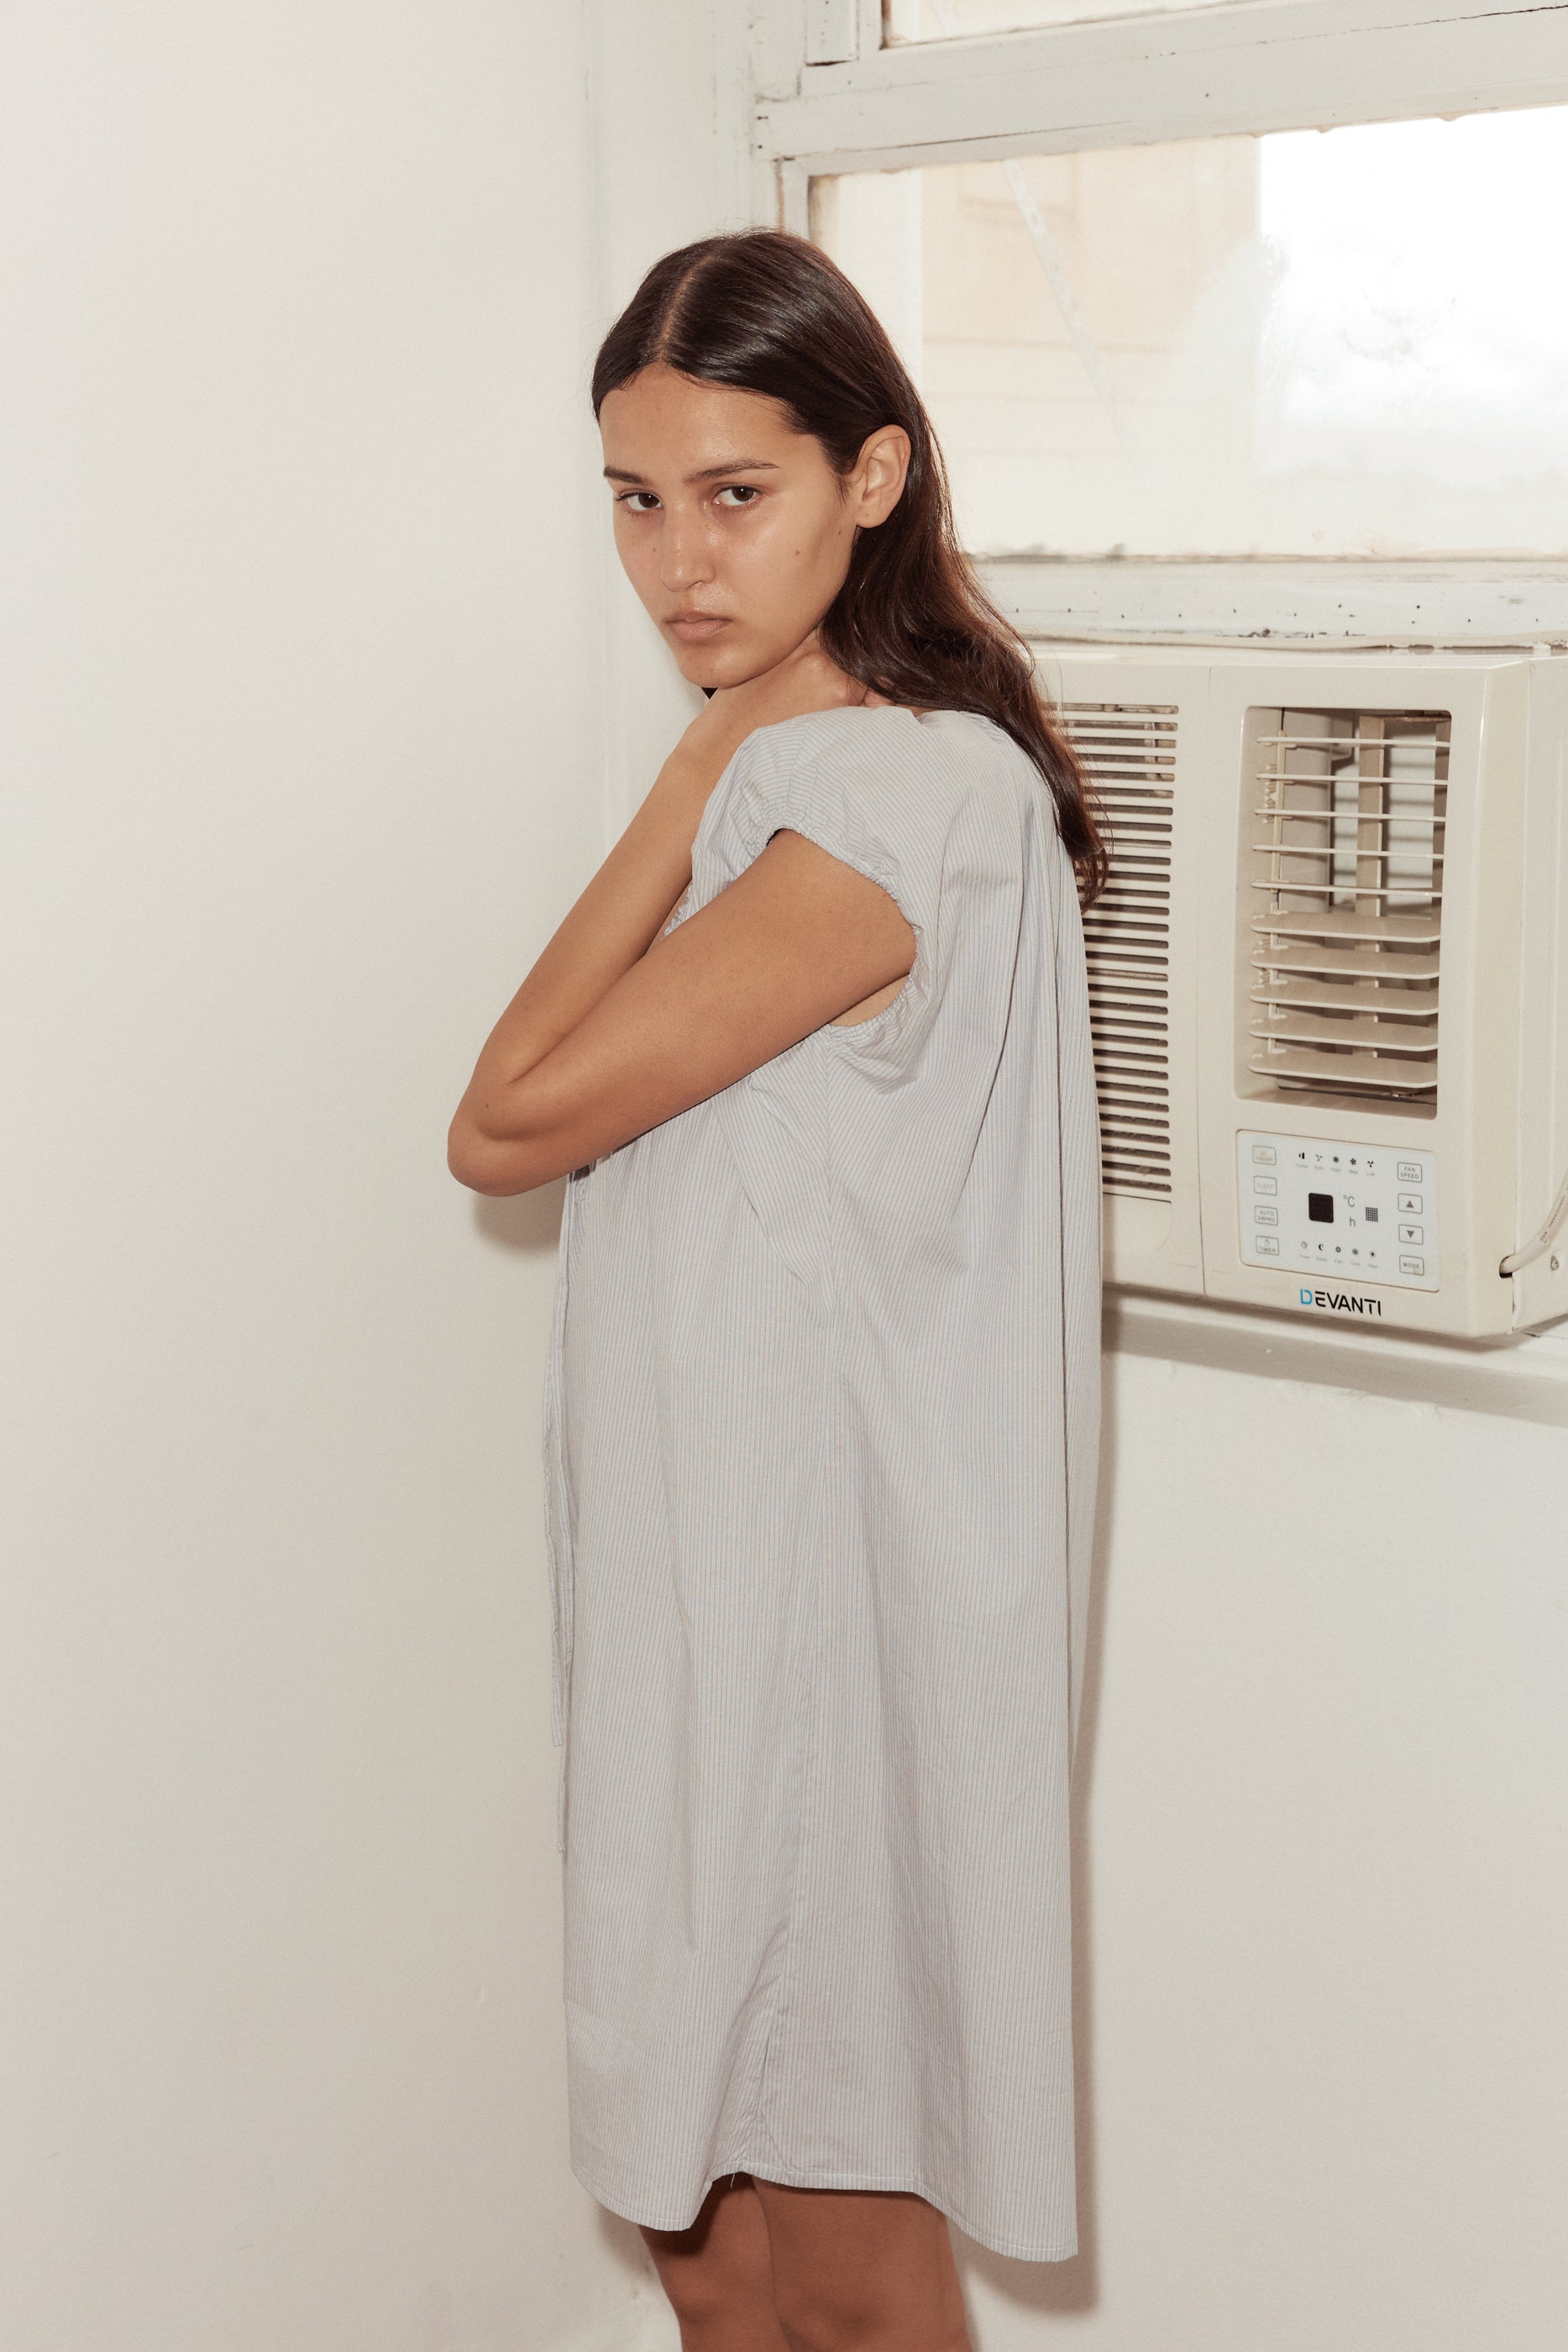 Female model wearing Capped Sleeve Dress - Dream Stripe by Deiji Studios against plain background